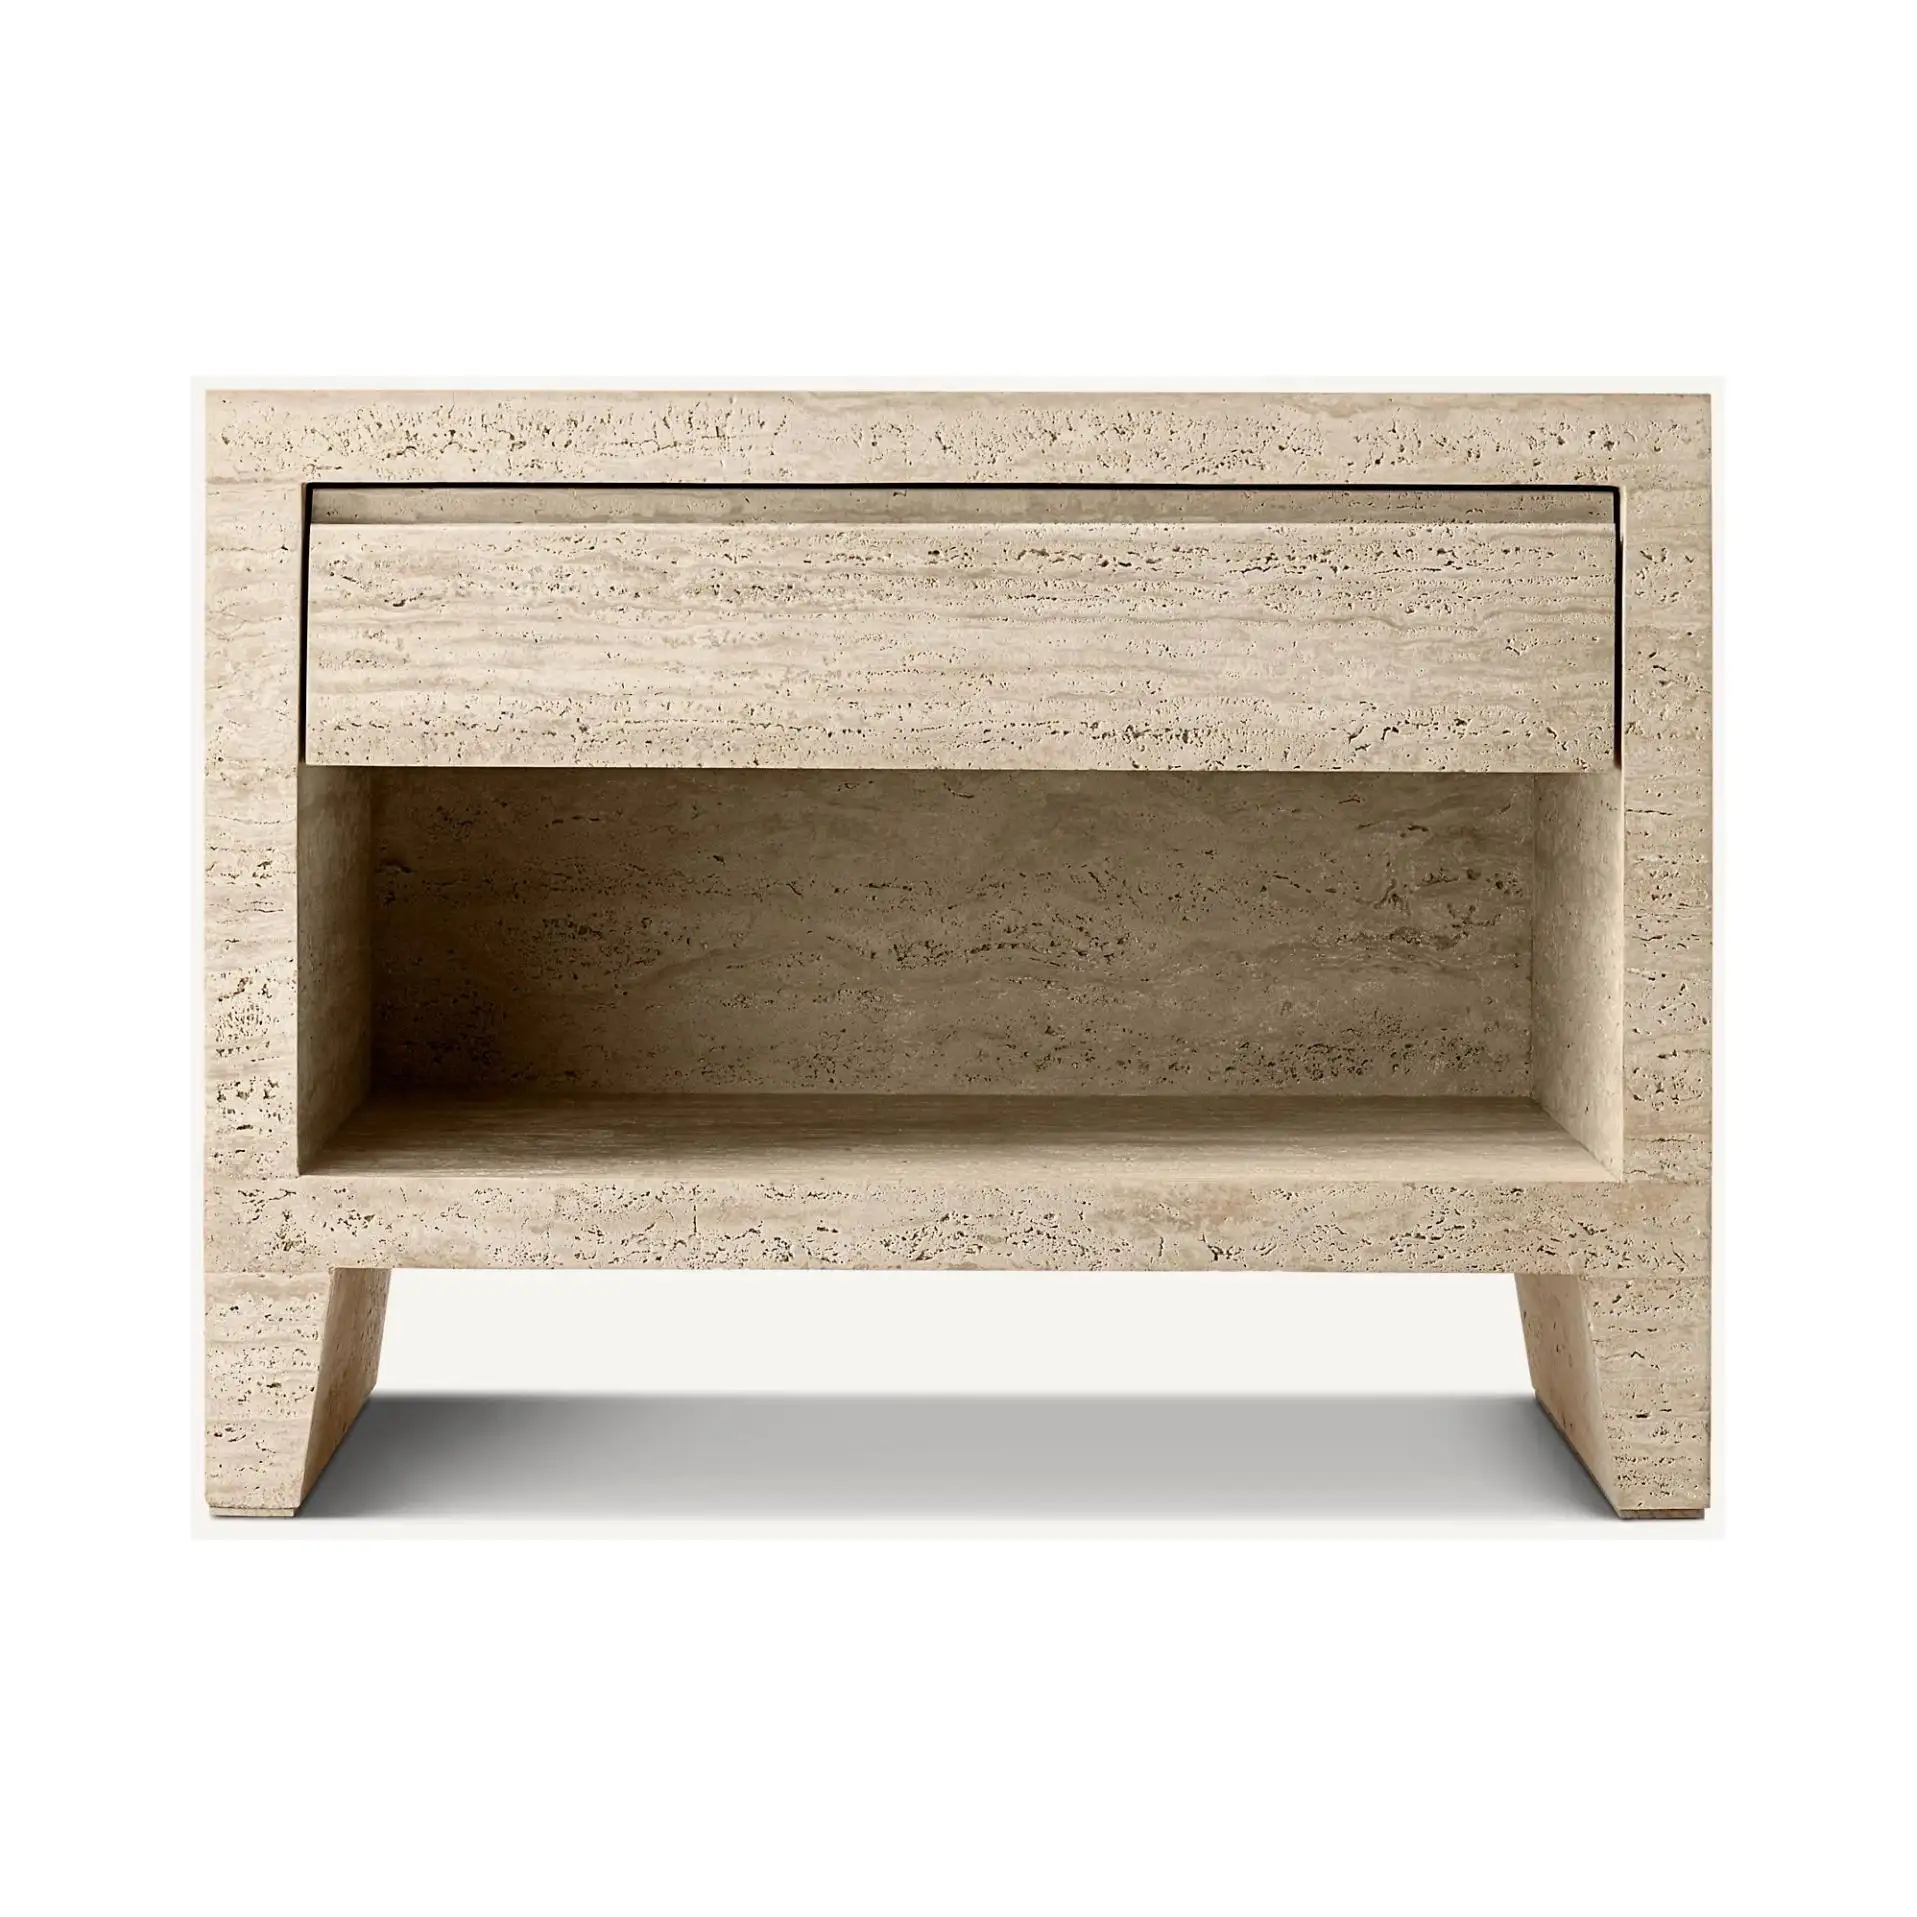 SHIHUI pietra naturale marmo mobili comodini moderni minimalisti comodini Beige travertino End Table per camera da letto